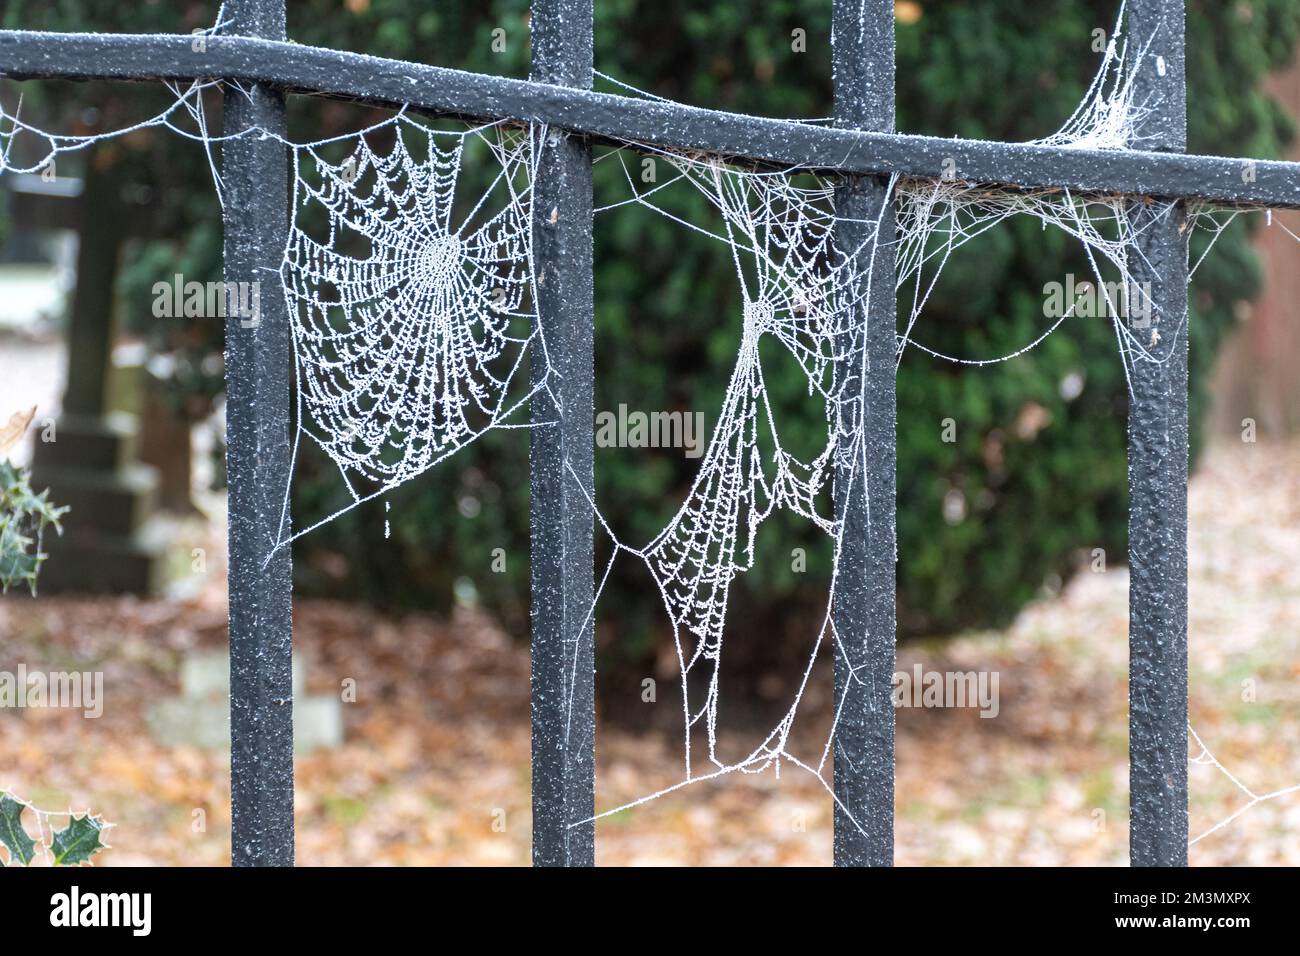 Toiles d'araignées ou toiles d'araignées gelées sur rambarde en métal après un gel de houar en hiver, décembre 2022, Hampshire, Angleterre, Royaume-Uni Banque D'Images